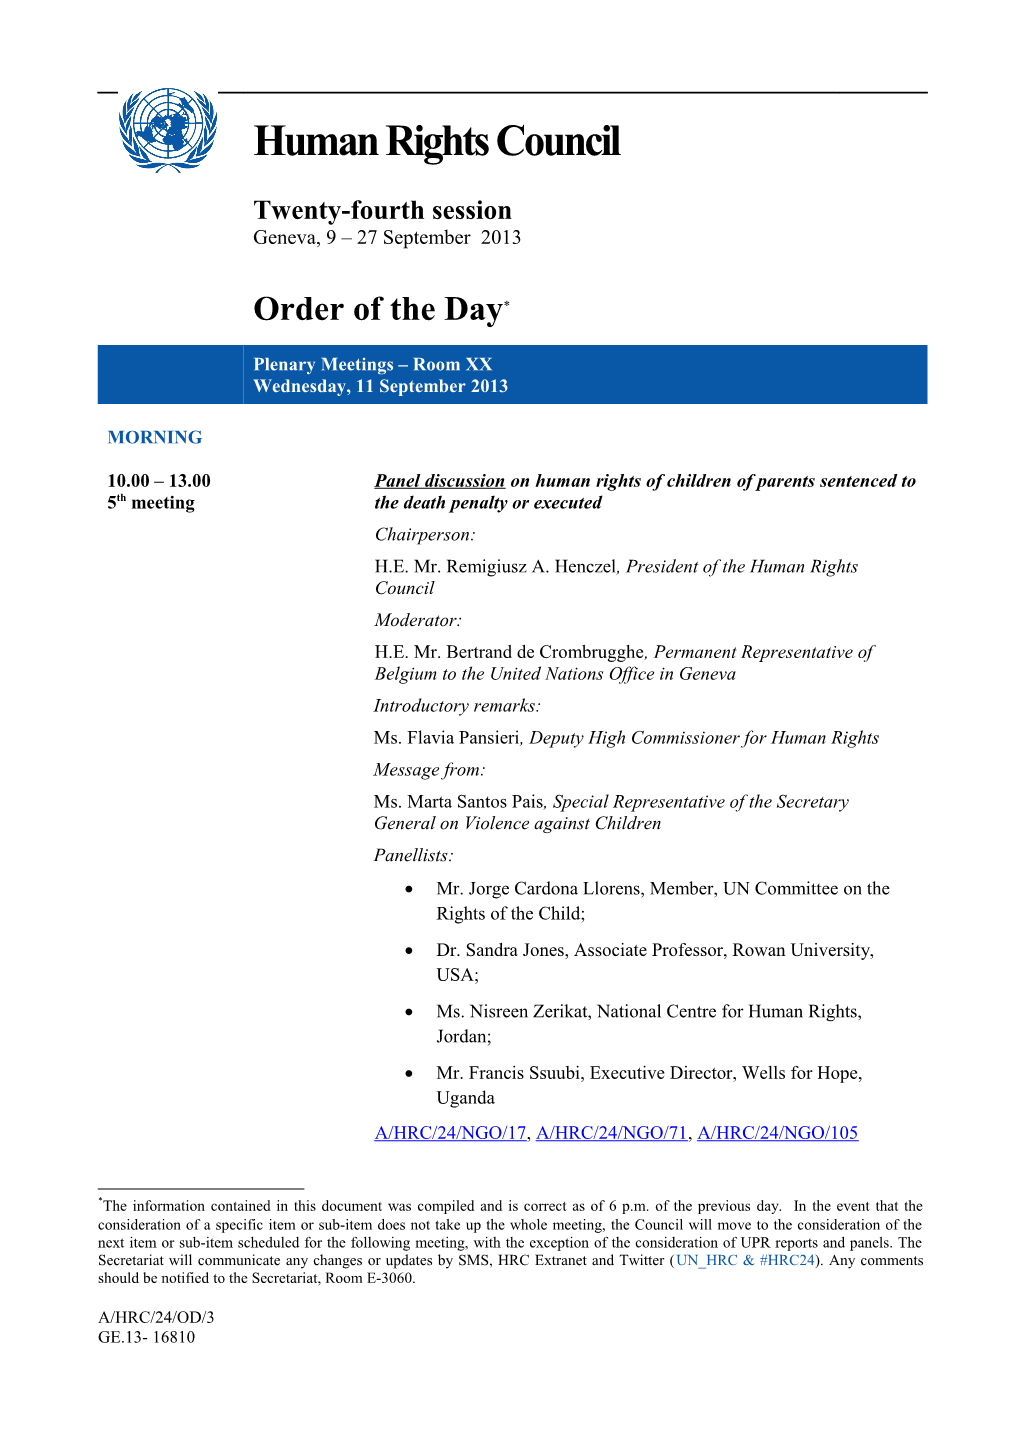 Order of the Day, Wednesday 10 September 2013